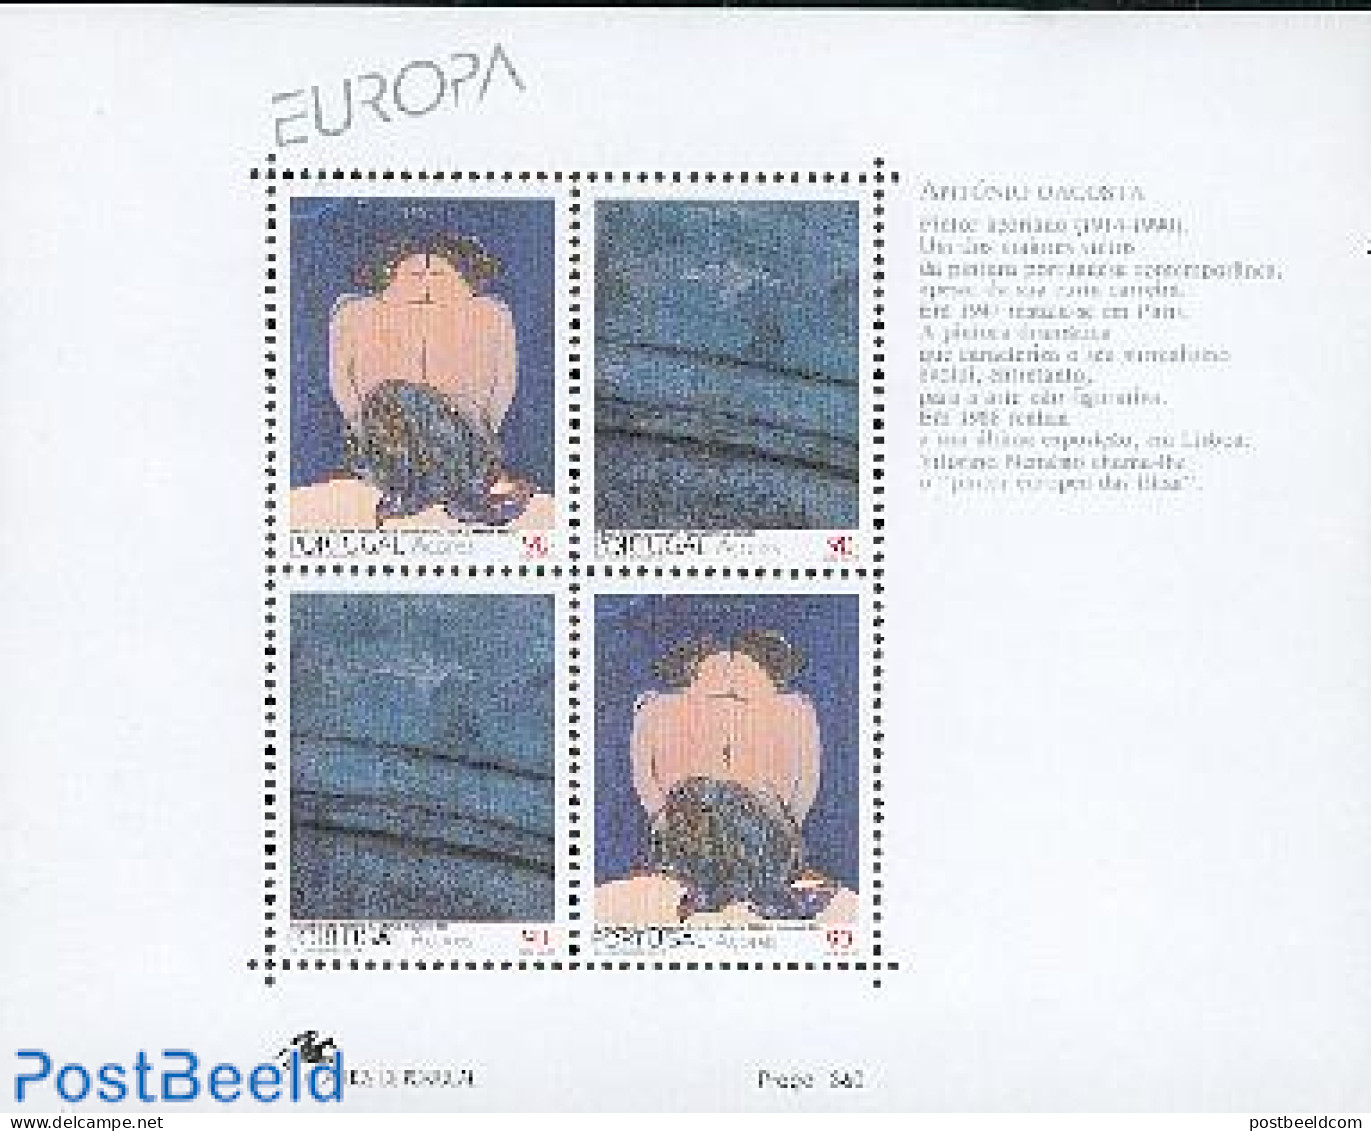 Azores 1993 Europa, Modern Art S/s, Mint NH, History - Europa (cept) - Art - Modern Art (1850-present) - Açores